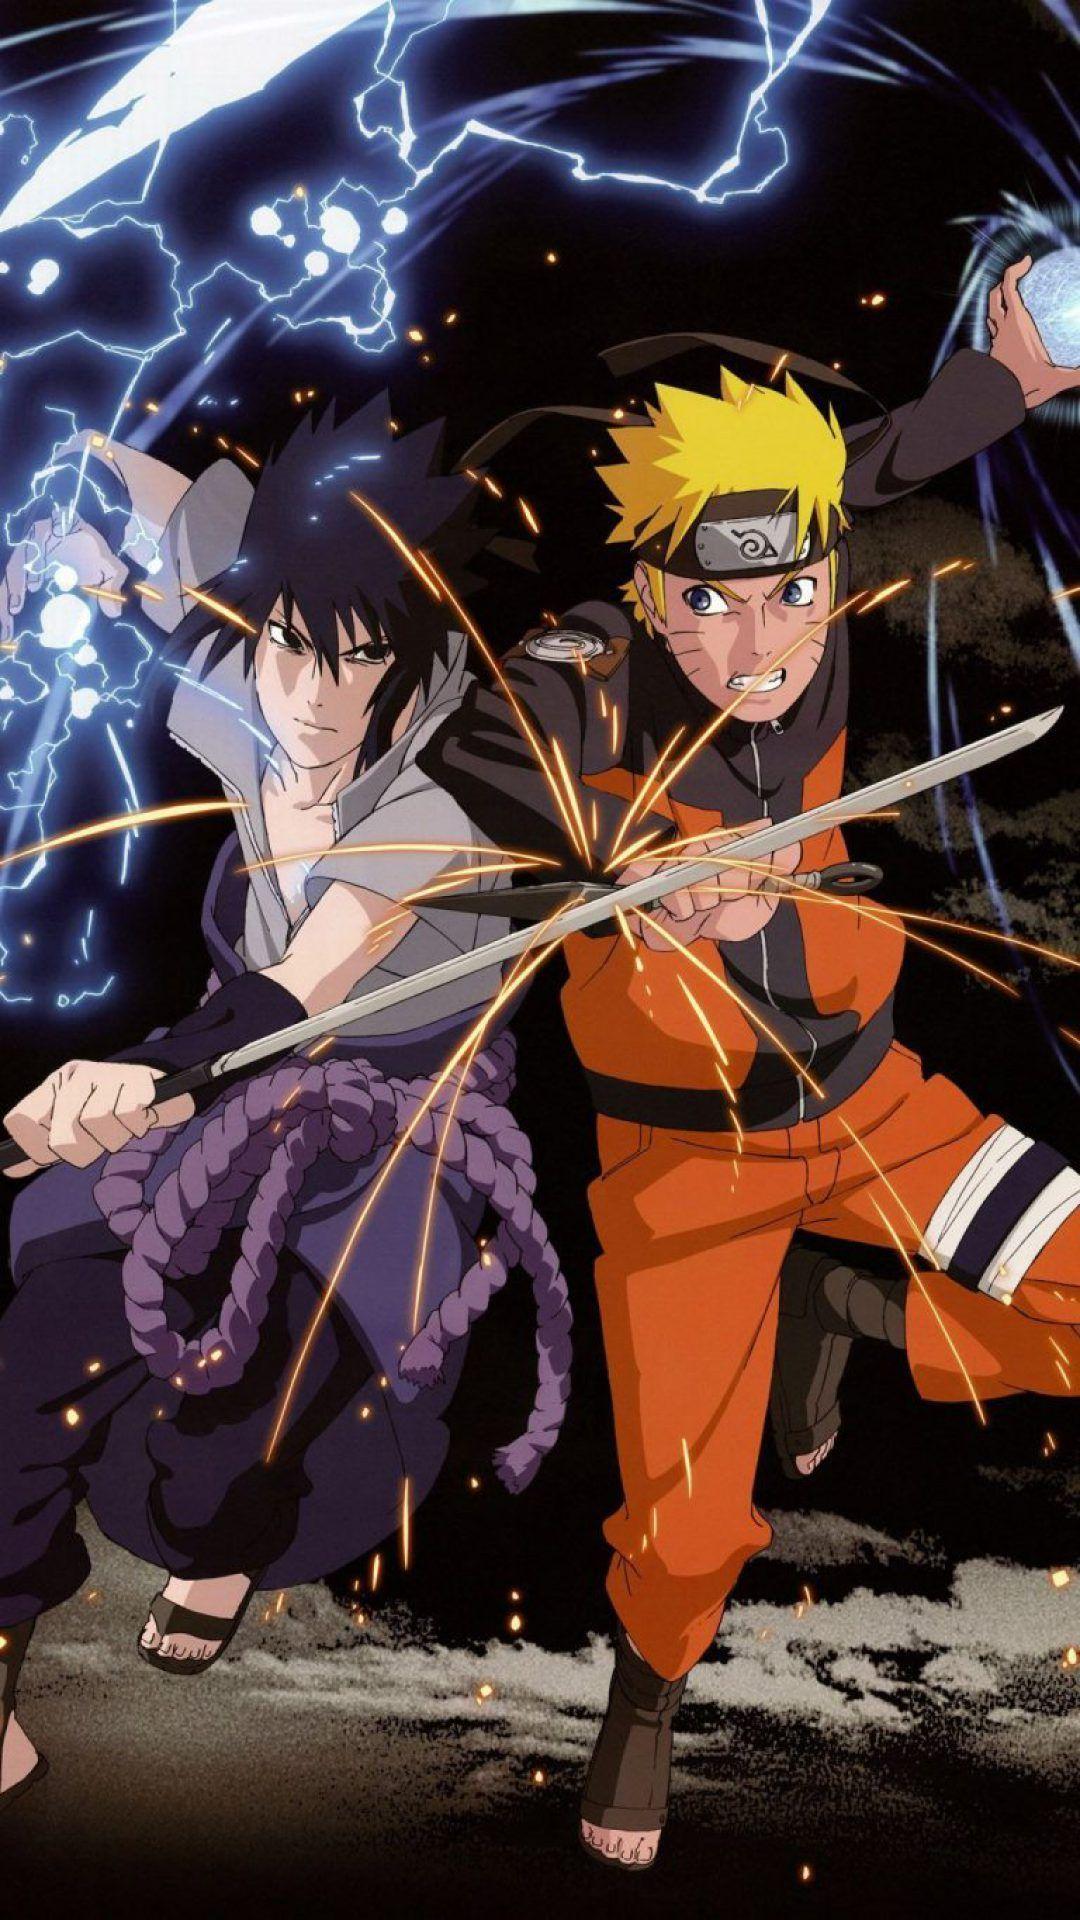 Hình nền iPhone Sasuke Naruto - Tận hưởng lối thiết kế nổi bật và tinh tế với hình nền iPhone Sasuke Naruto này. Không chỉ đơn giản là những nhân vật phim hoạt hình, hình ảnh Naruto và Sasuke trong bộ hình nền này còn truyền tải một thông điệp tinh thần mạnh mẽ và kiên cường khiến cho bạn luôn có thêm động lực để cố gắng hơn.